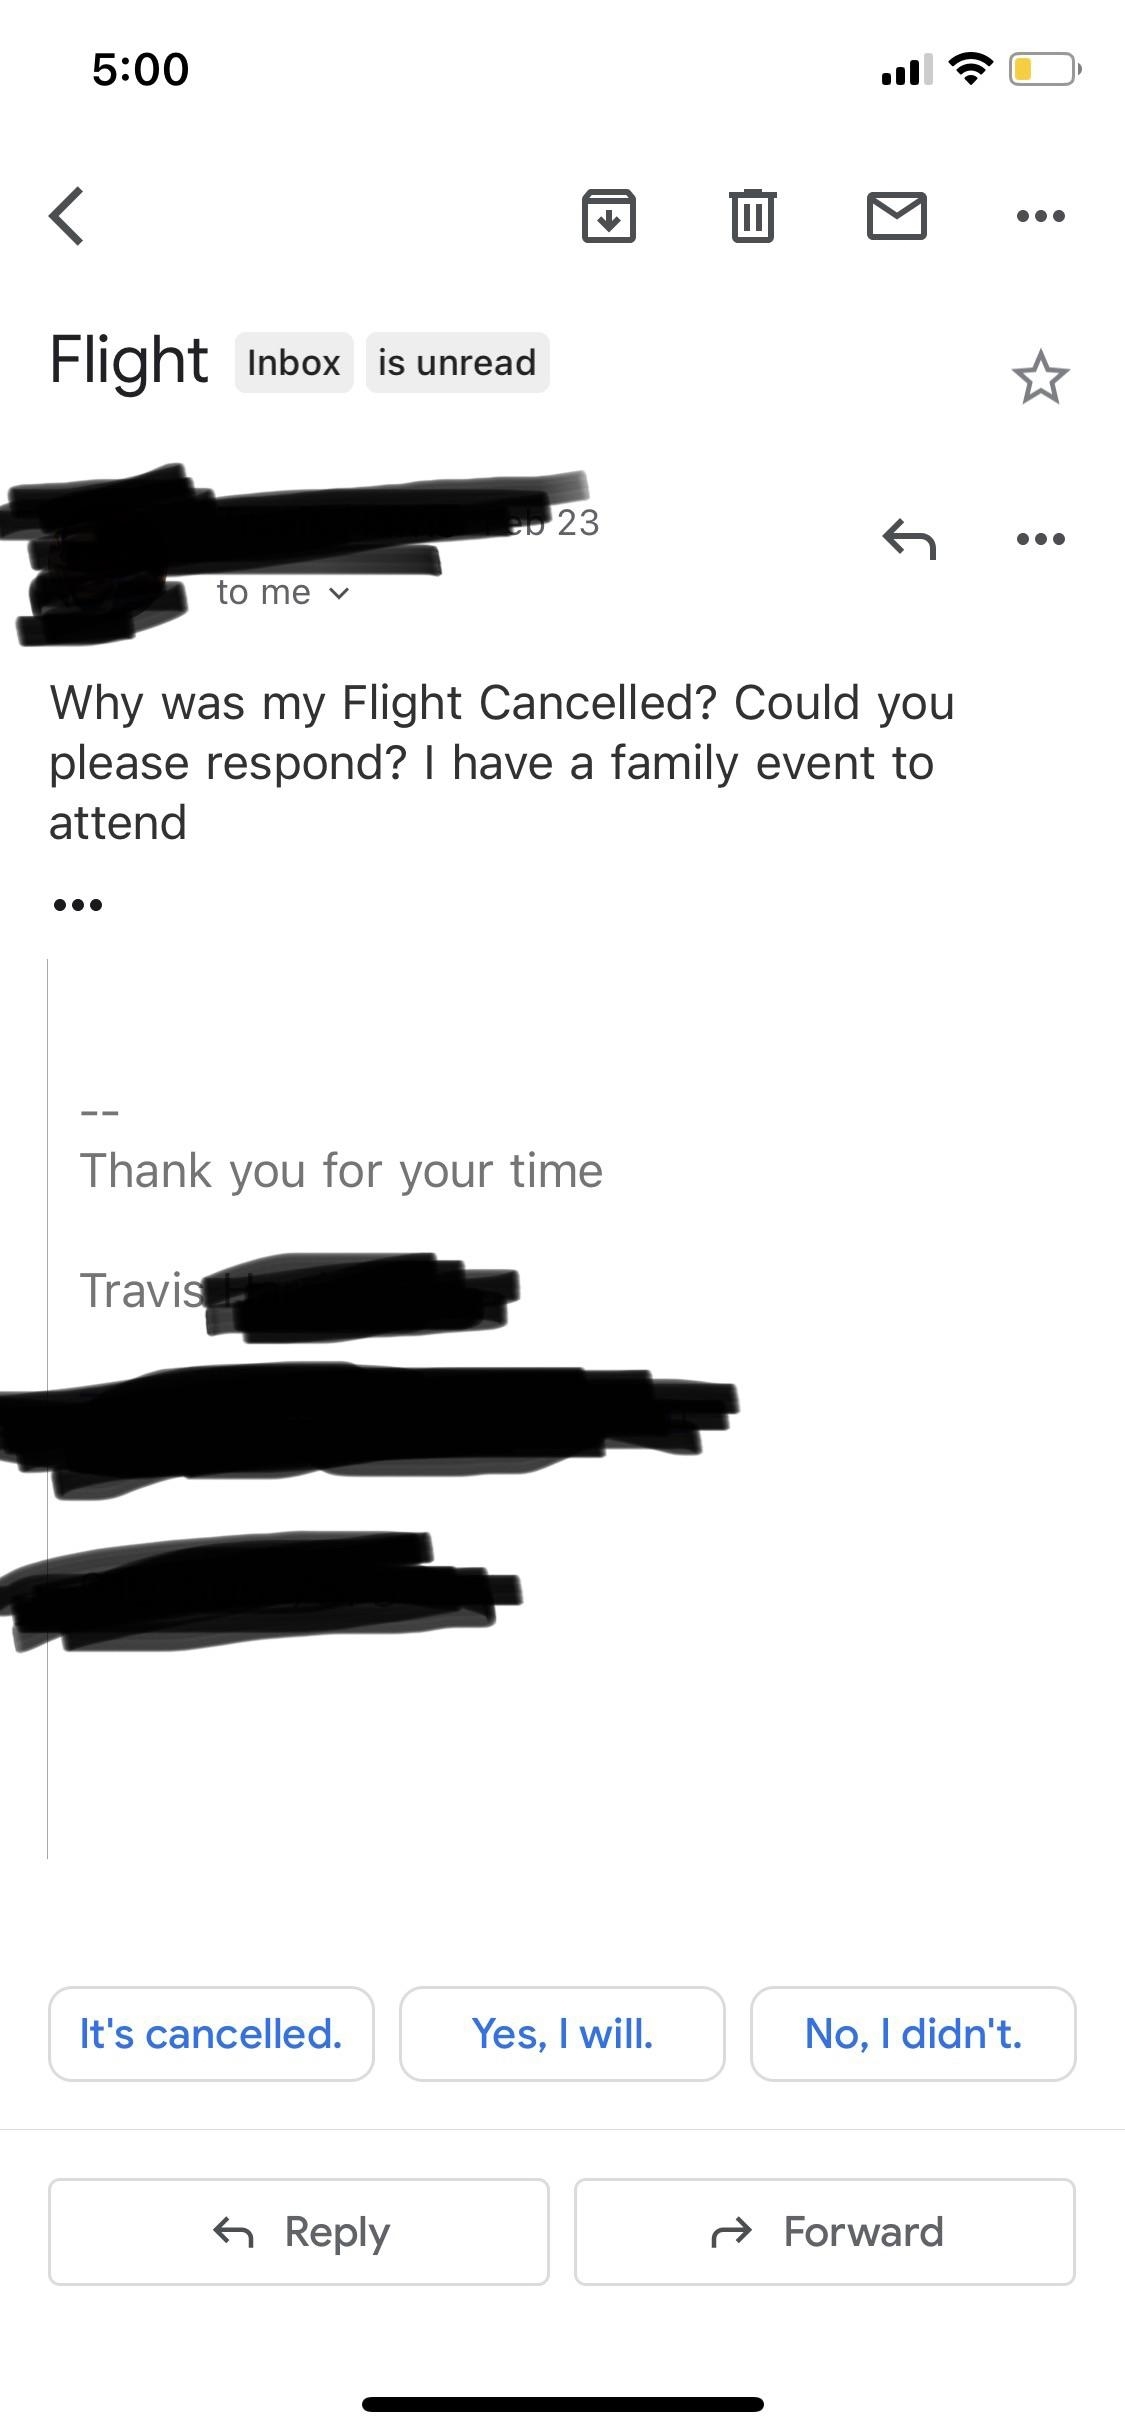 A screenshot of an email